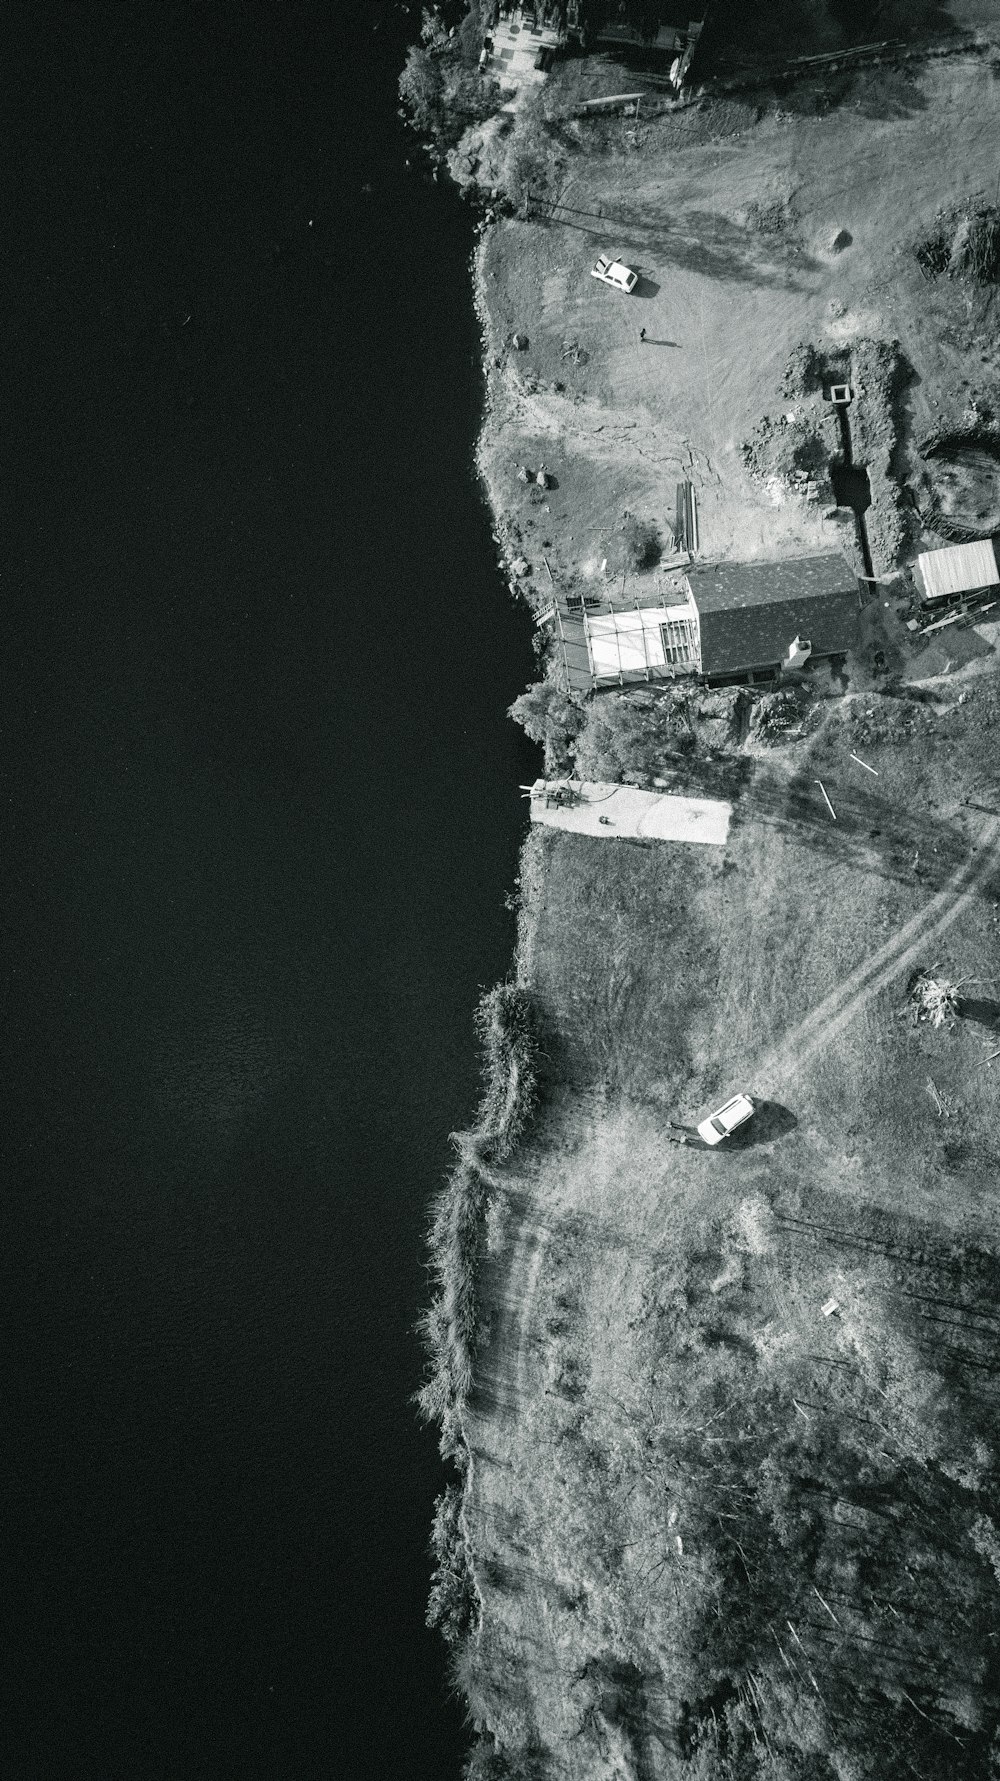 Luftaufnahme von Häusern in der Nähe von Gewässern